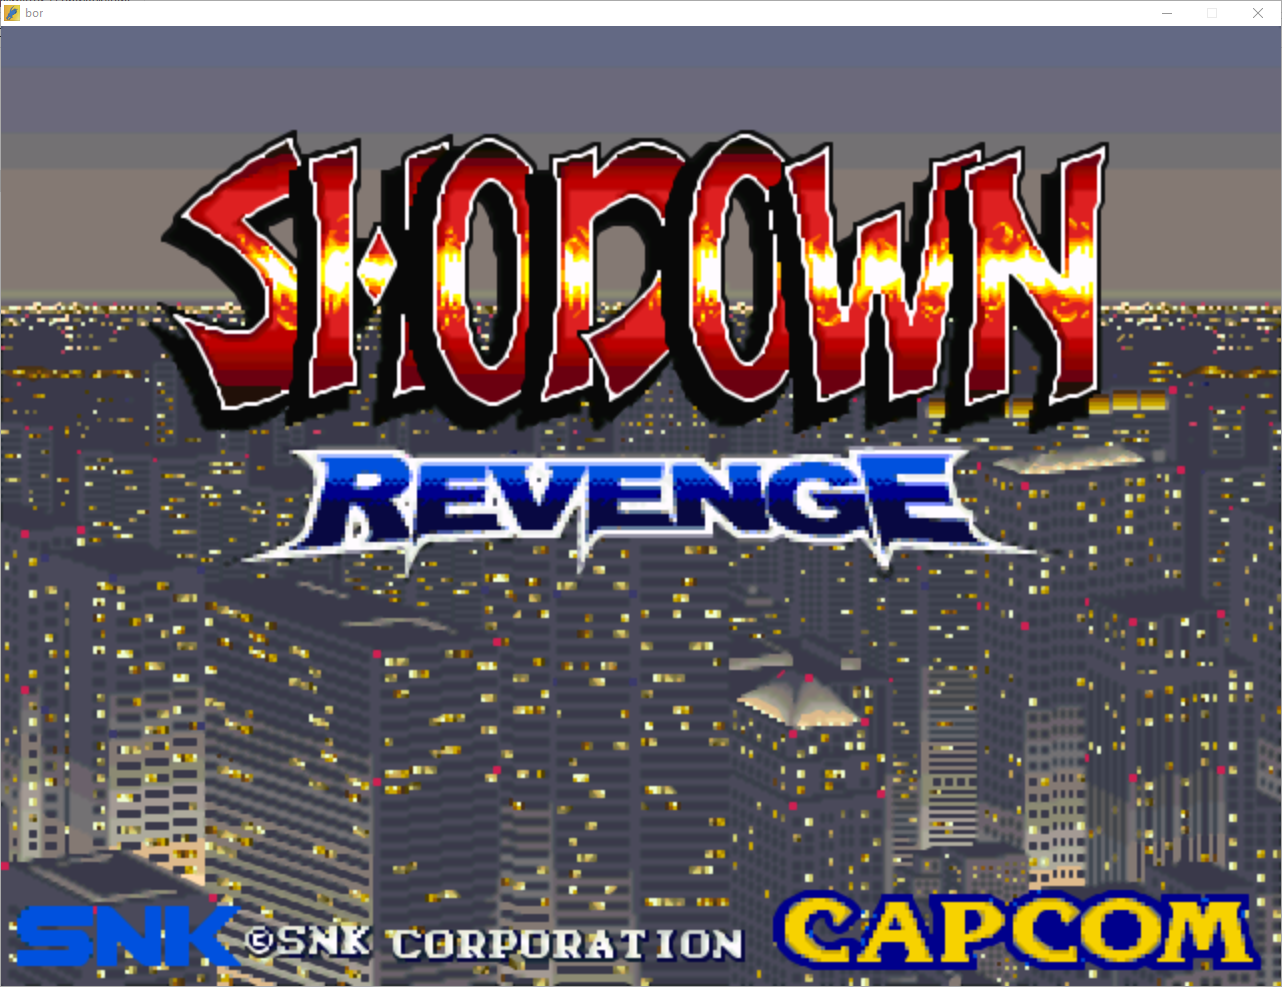 Showdown Revenge-openbor